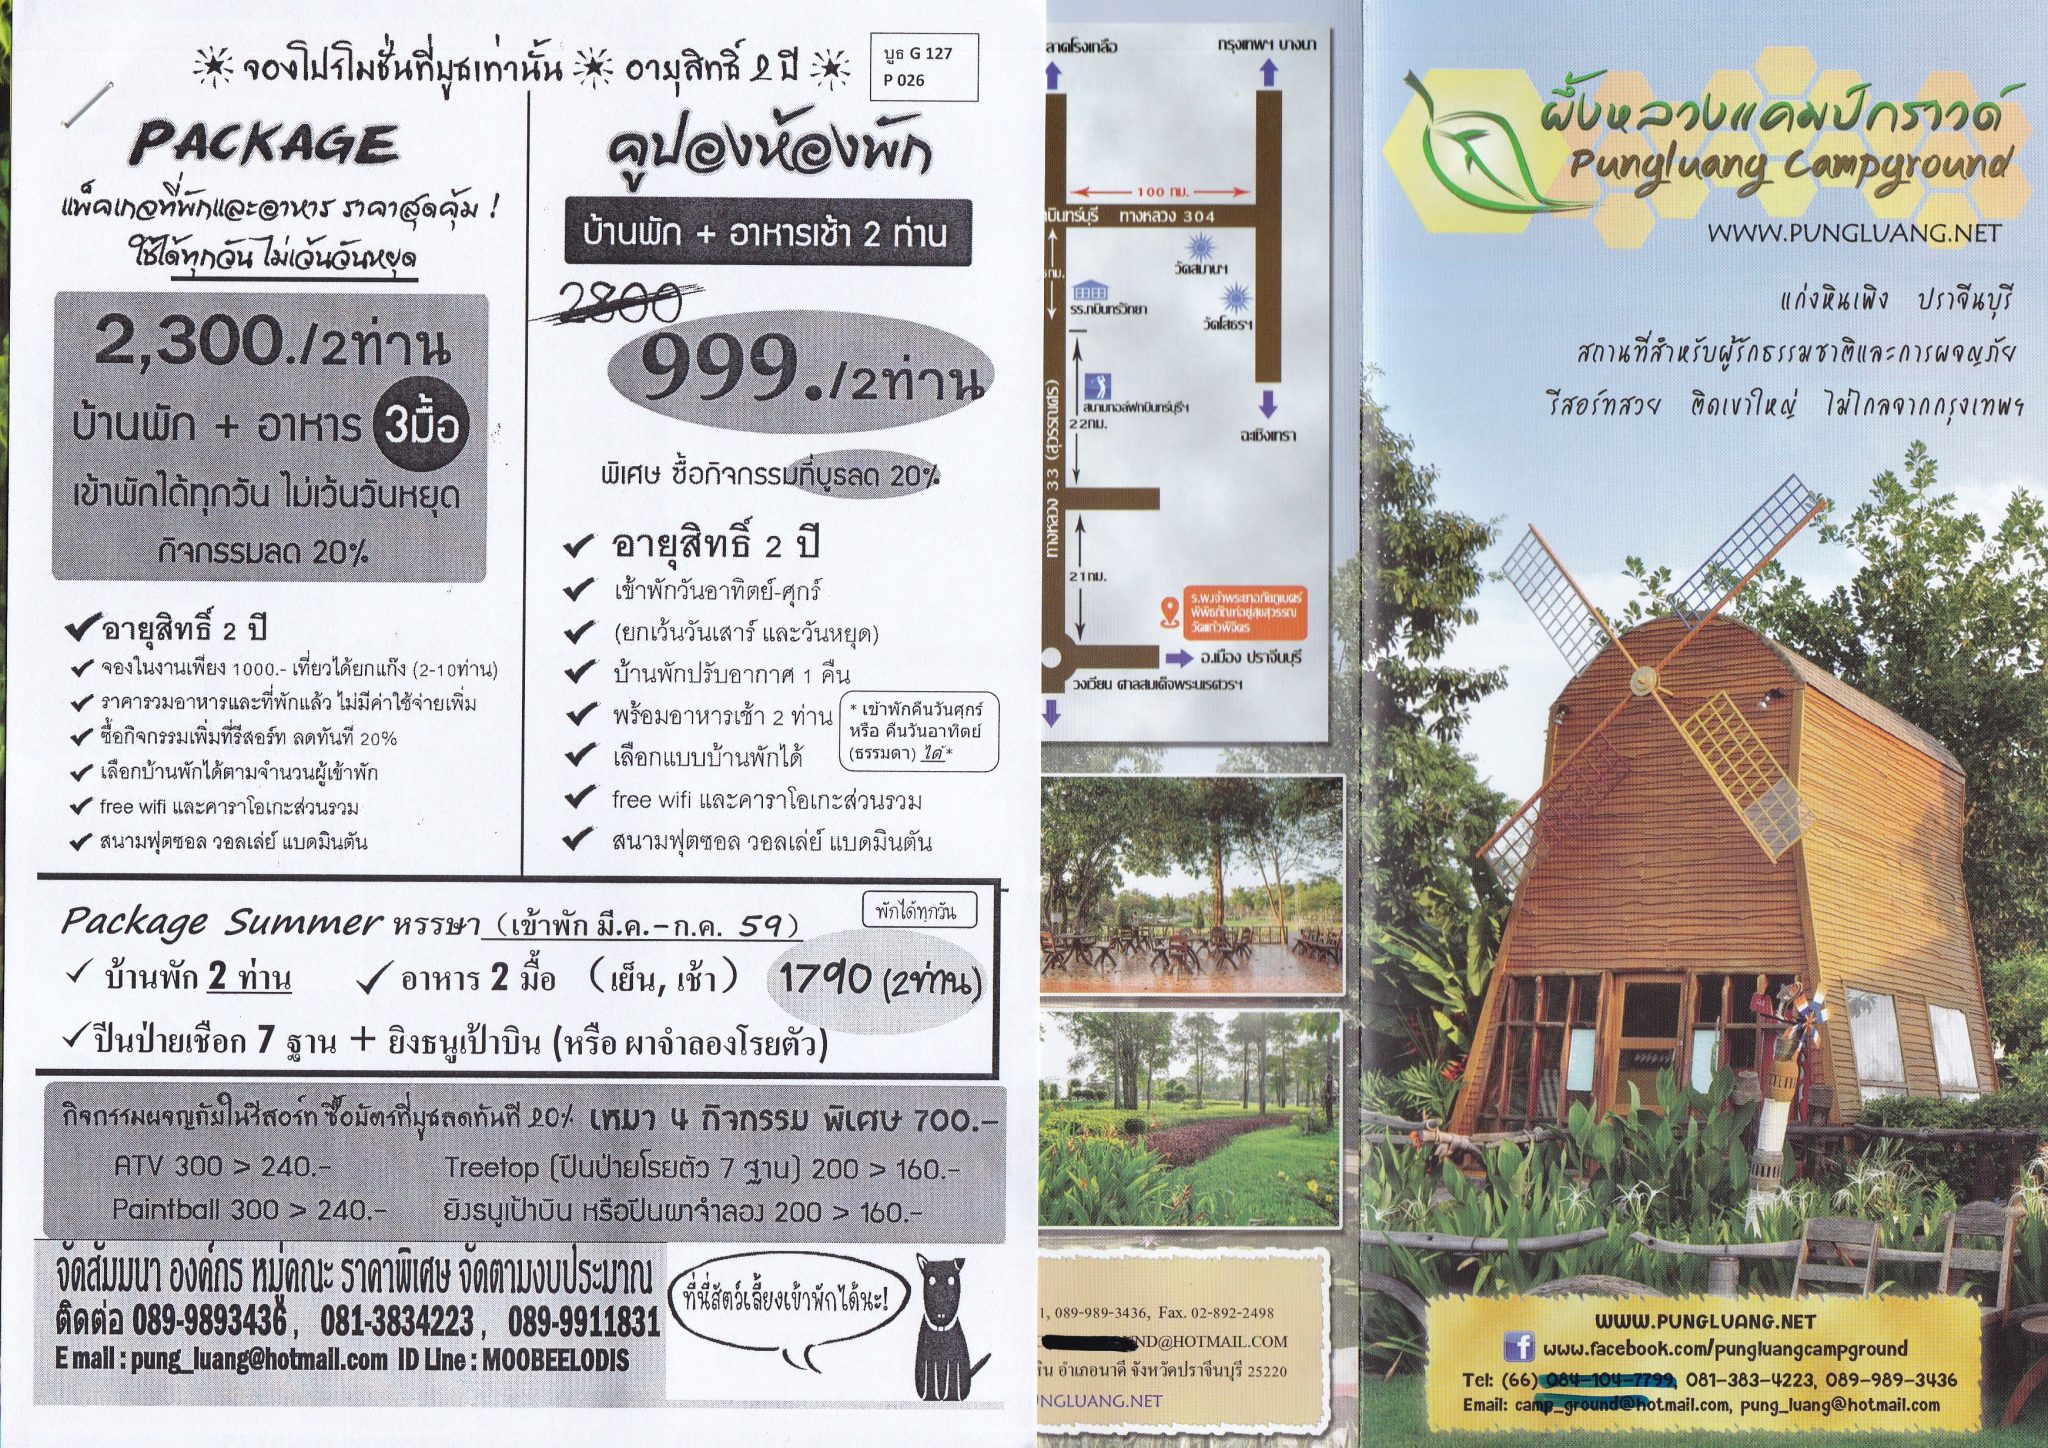 Travel-Hotel-Resort-restaurant-weekdaySpecial-Thailand-2559-1-8